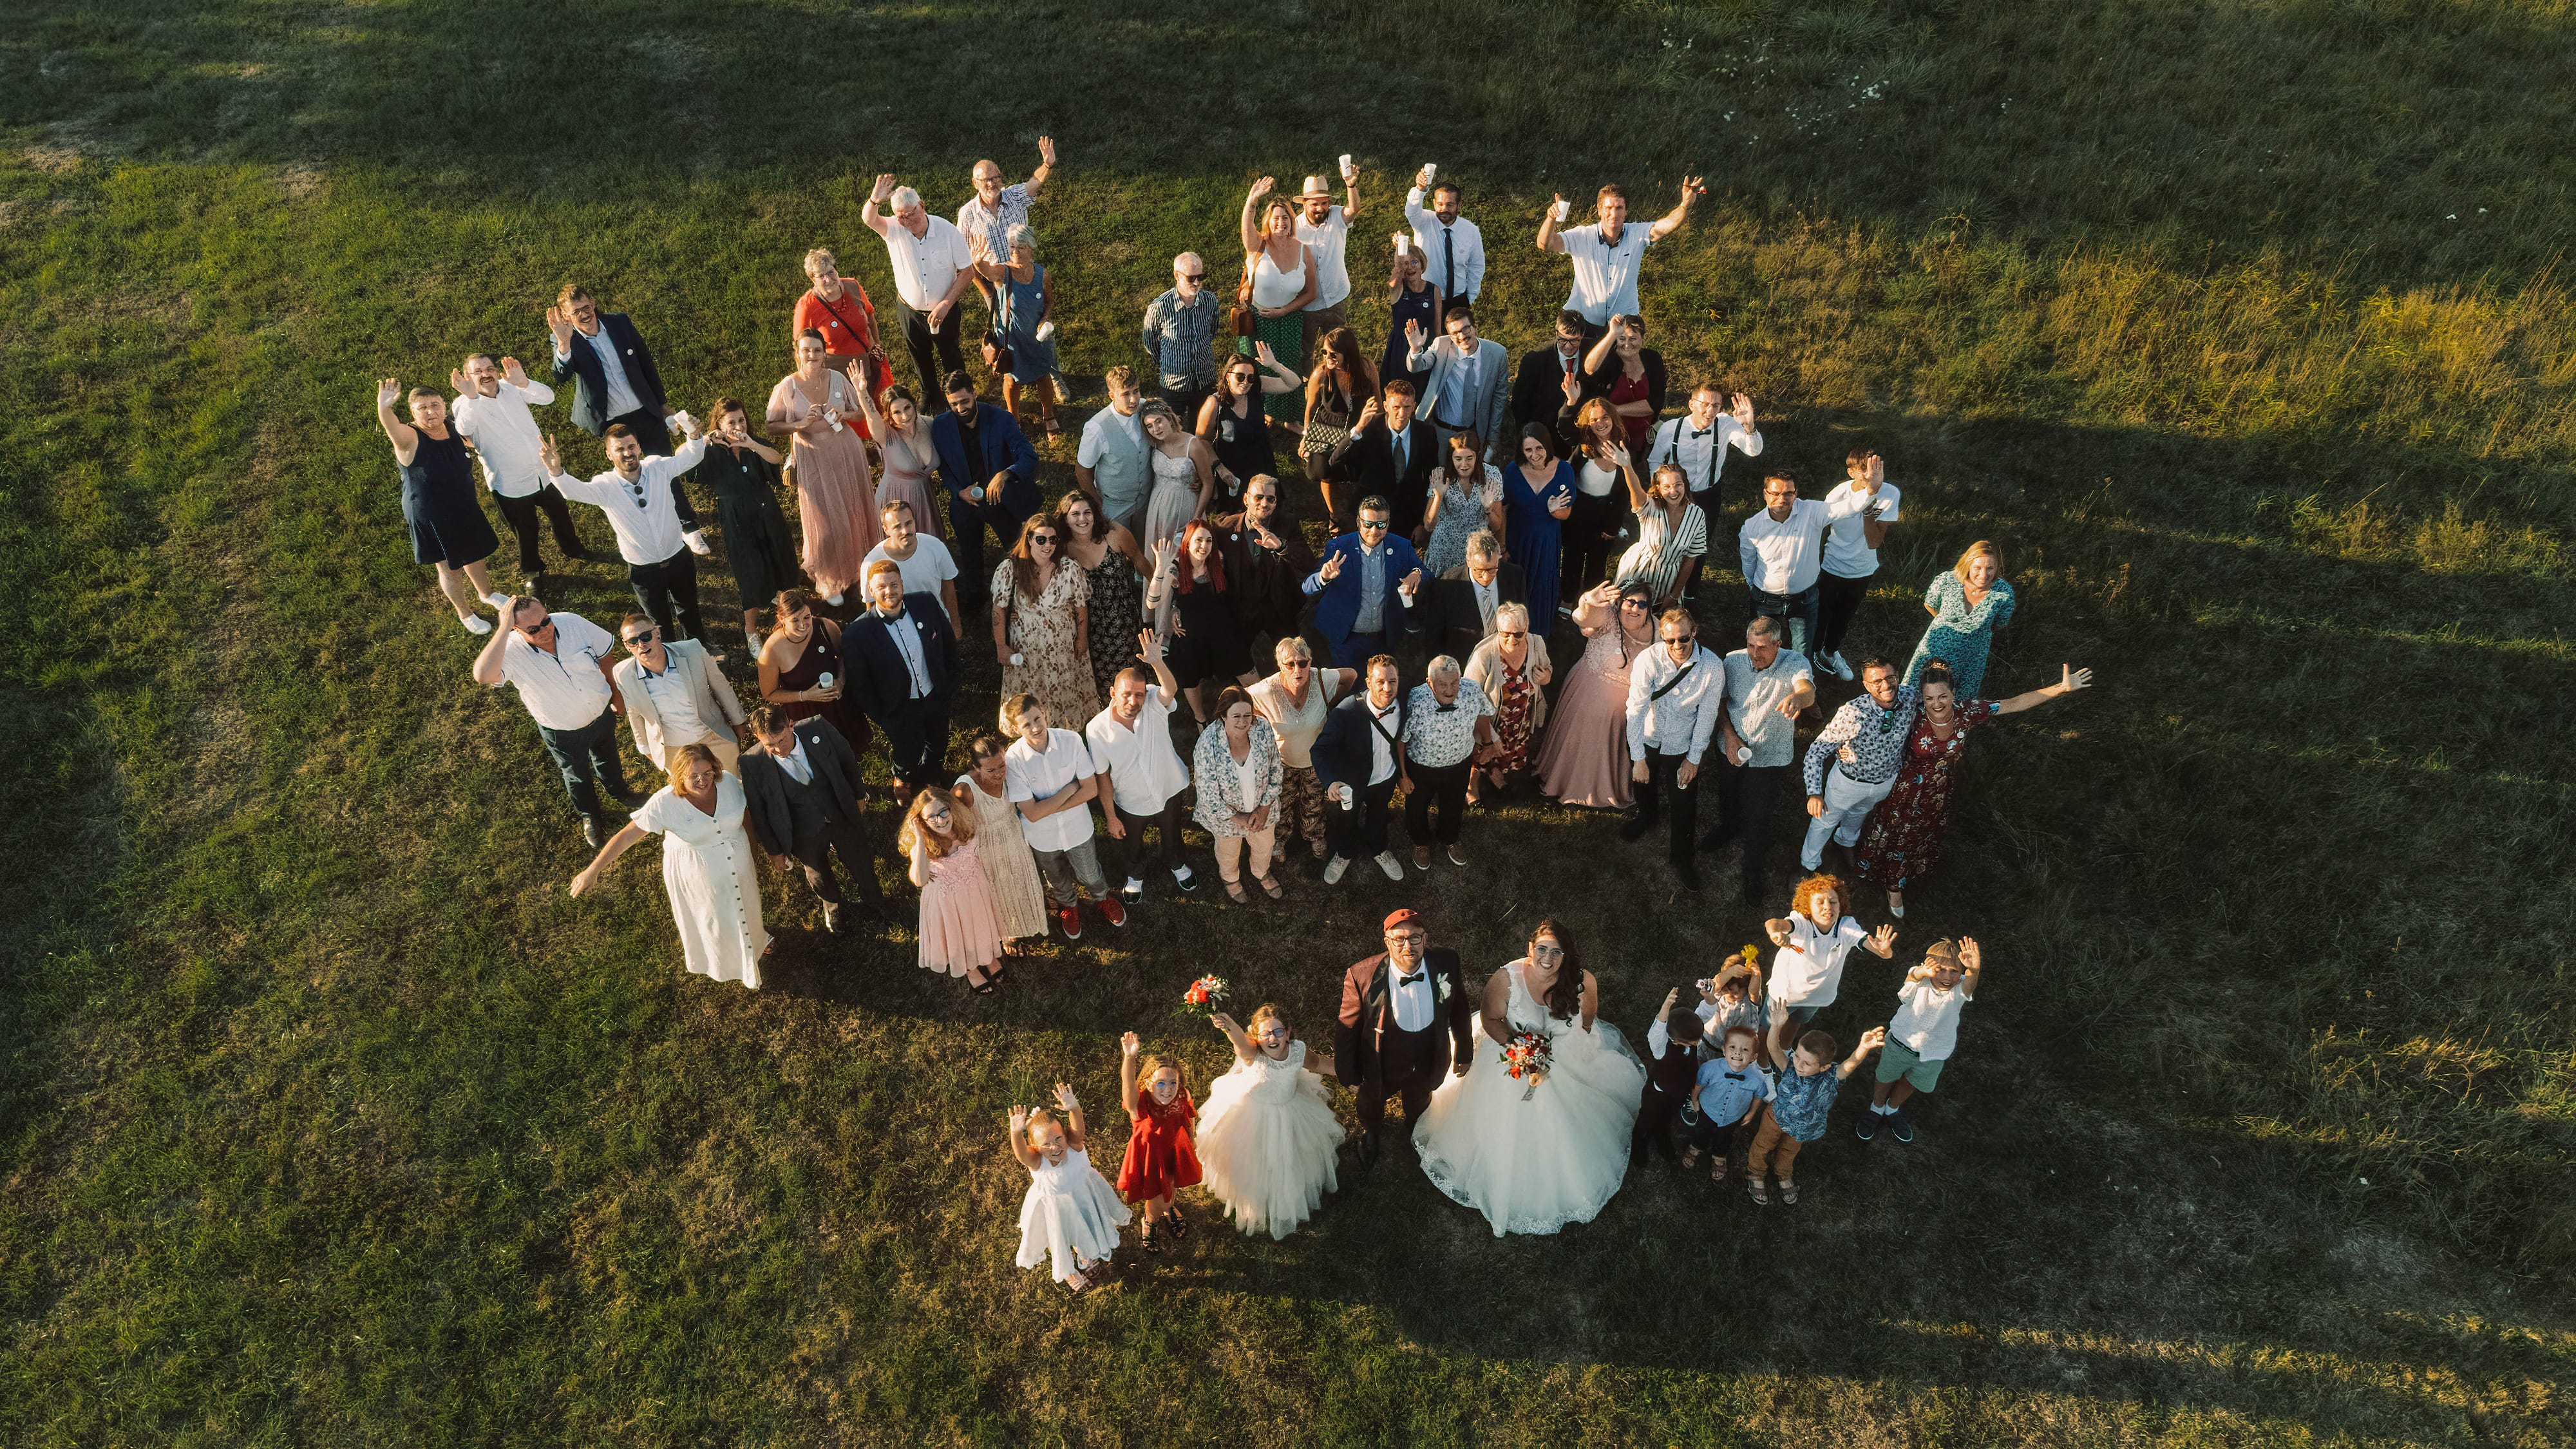 photographe vidéaste drone mariage Normandie